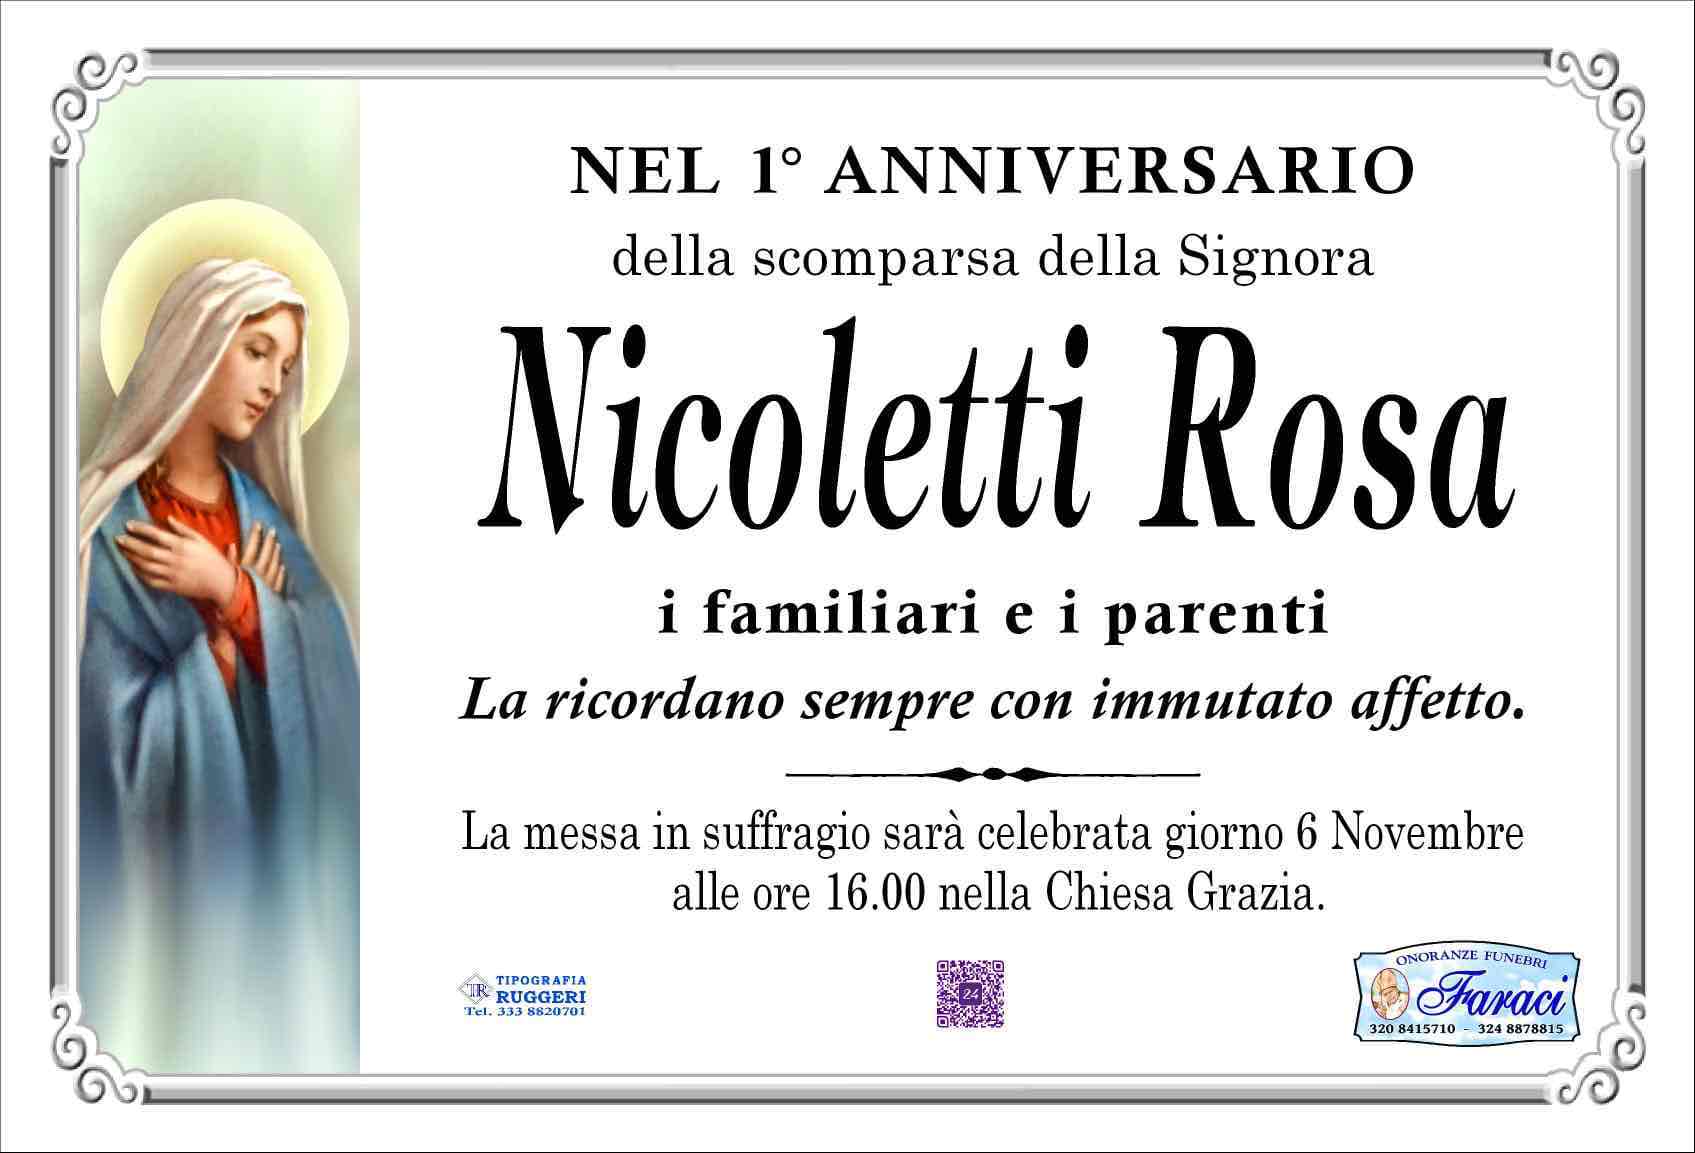 Rosa Nicoletti